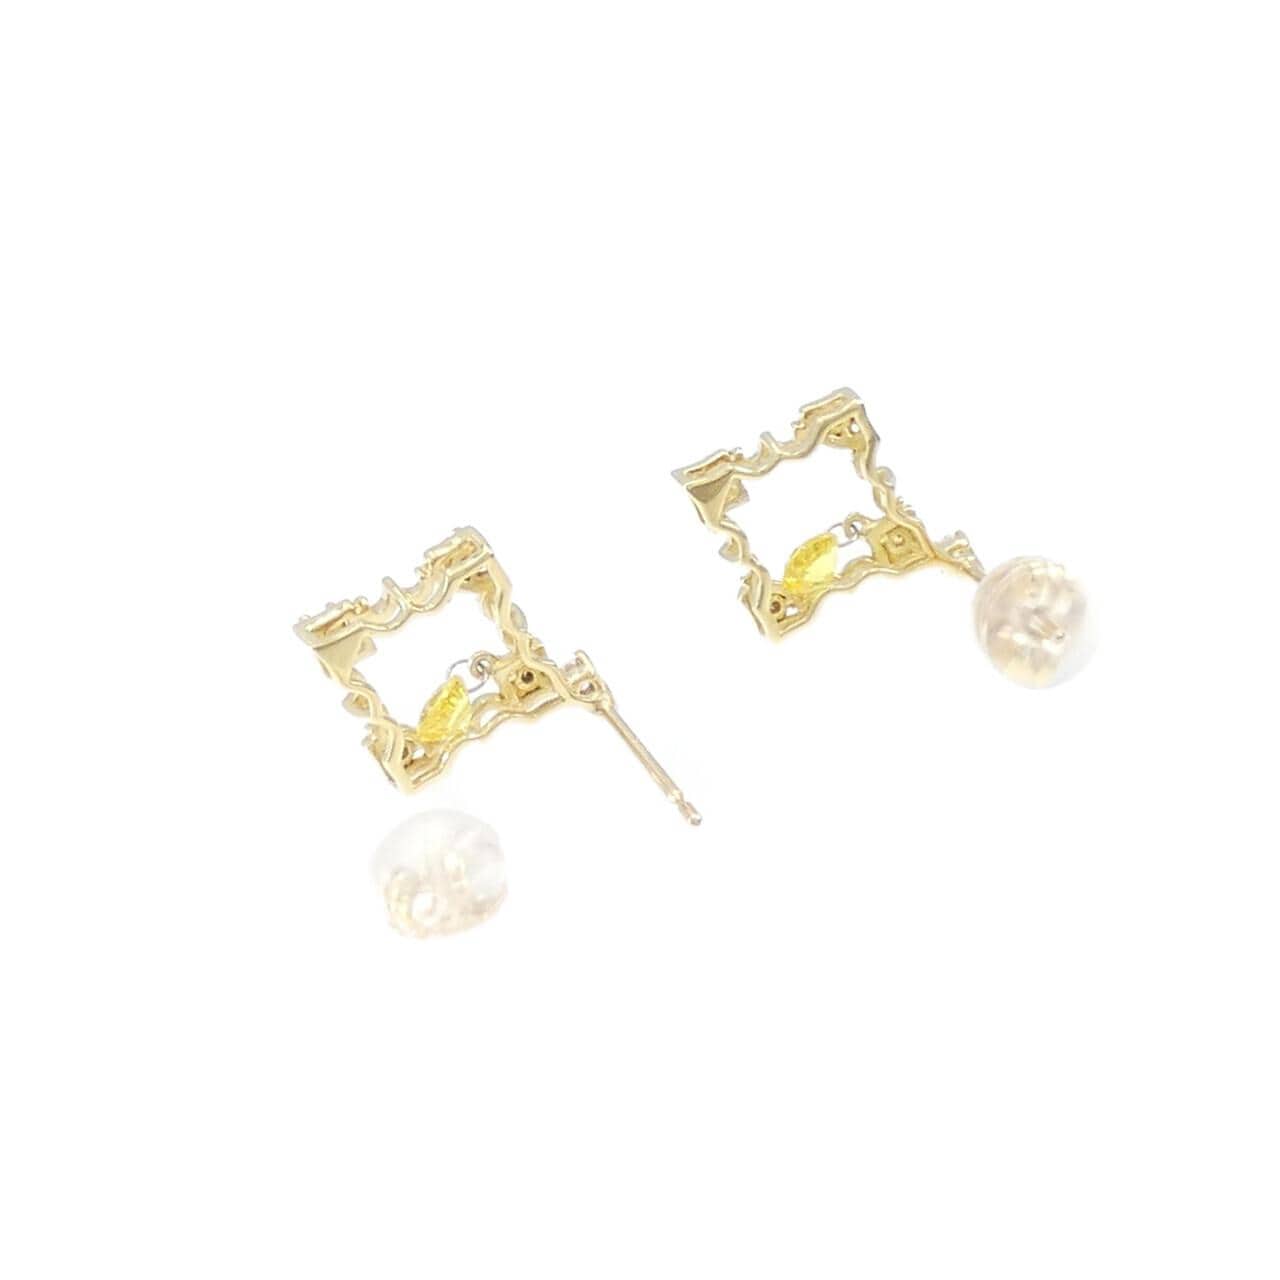 K18YG sapphire earrings